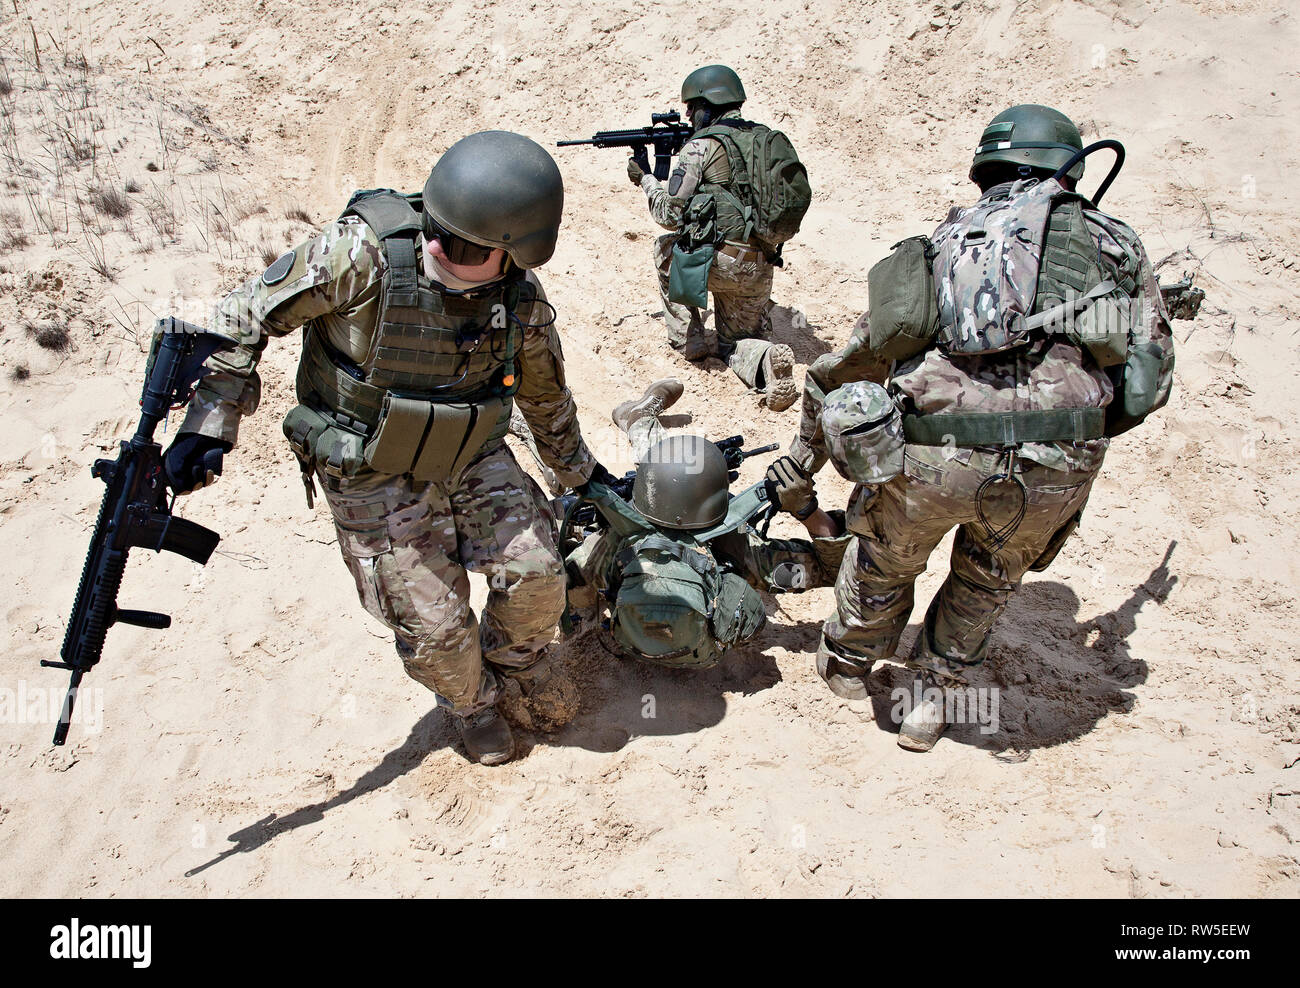 Trupp Soldaten evakuieren die verletzten Kollegen in den Armen, in der Wüste. Stockfoto